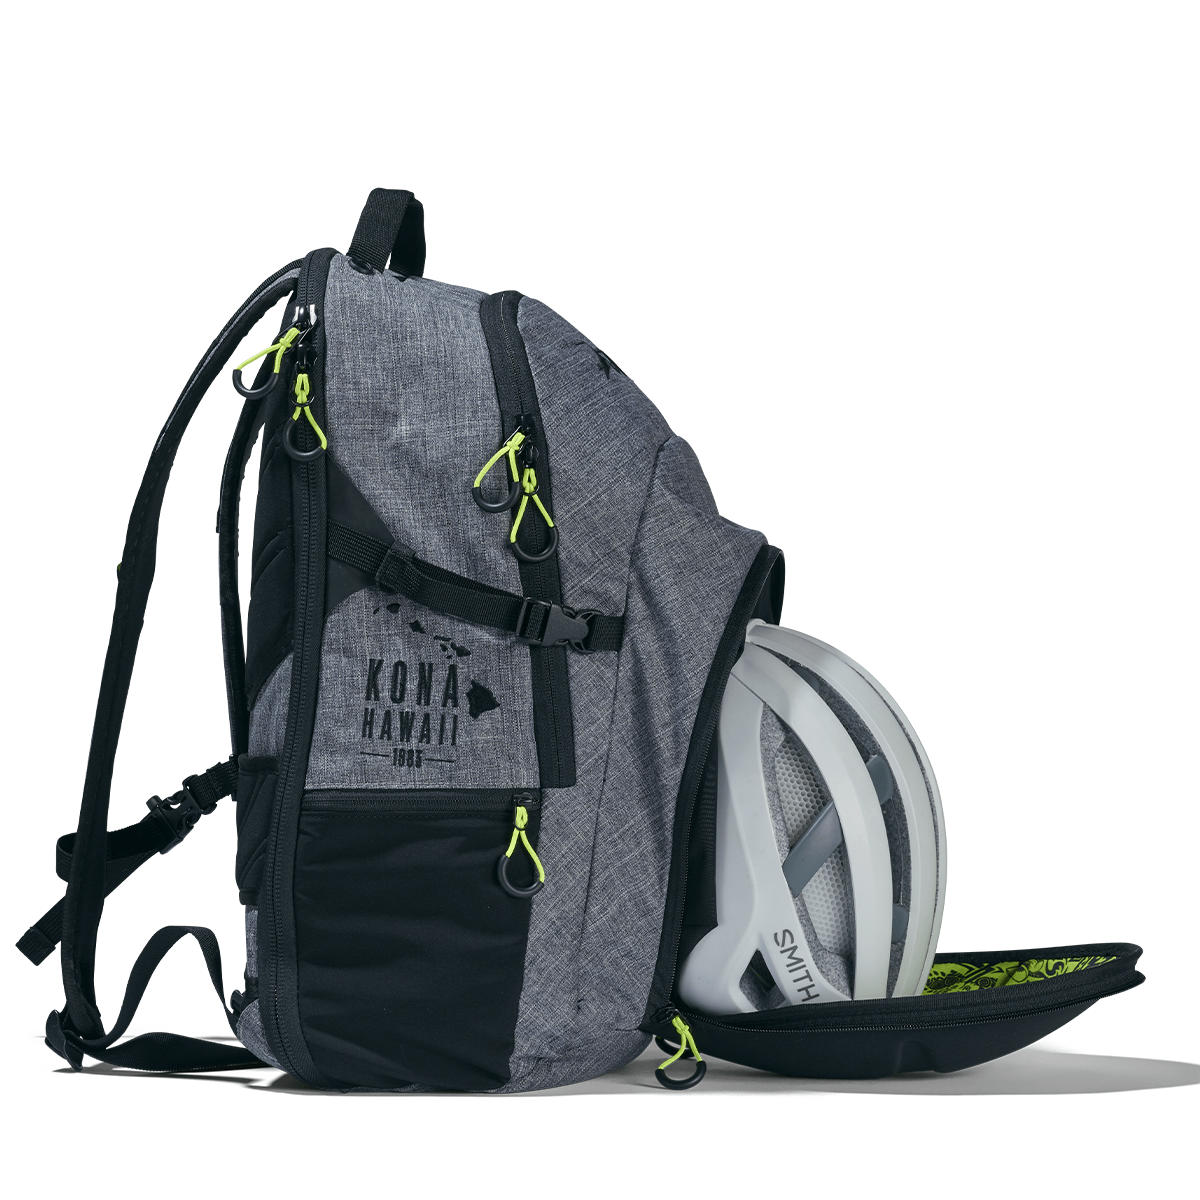 zoot ultra tri backpack canvas gray 11 Ba lô ba môn phối hợp Zoot Ultra Tri Backpack - Canvas Gray (25L) - YCB.vn